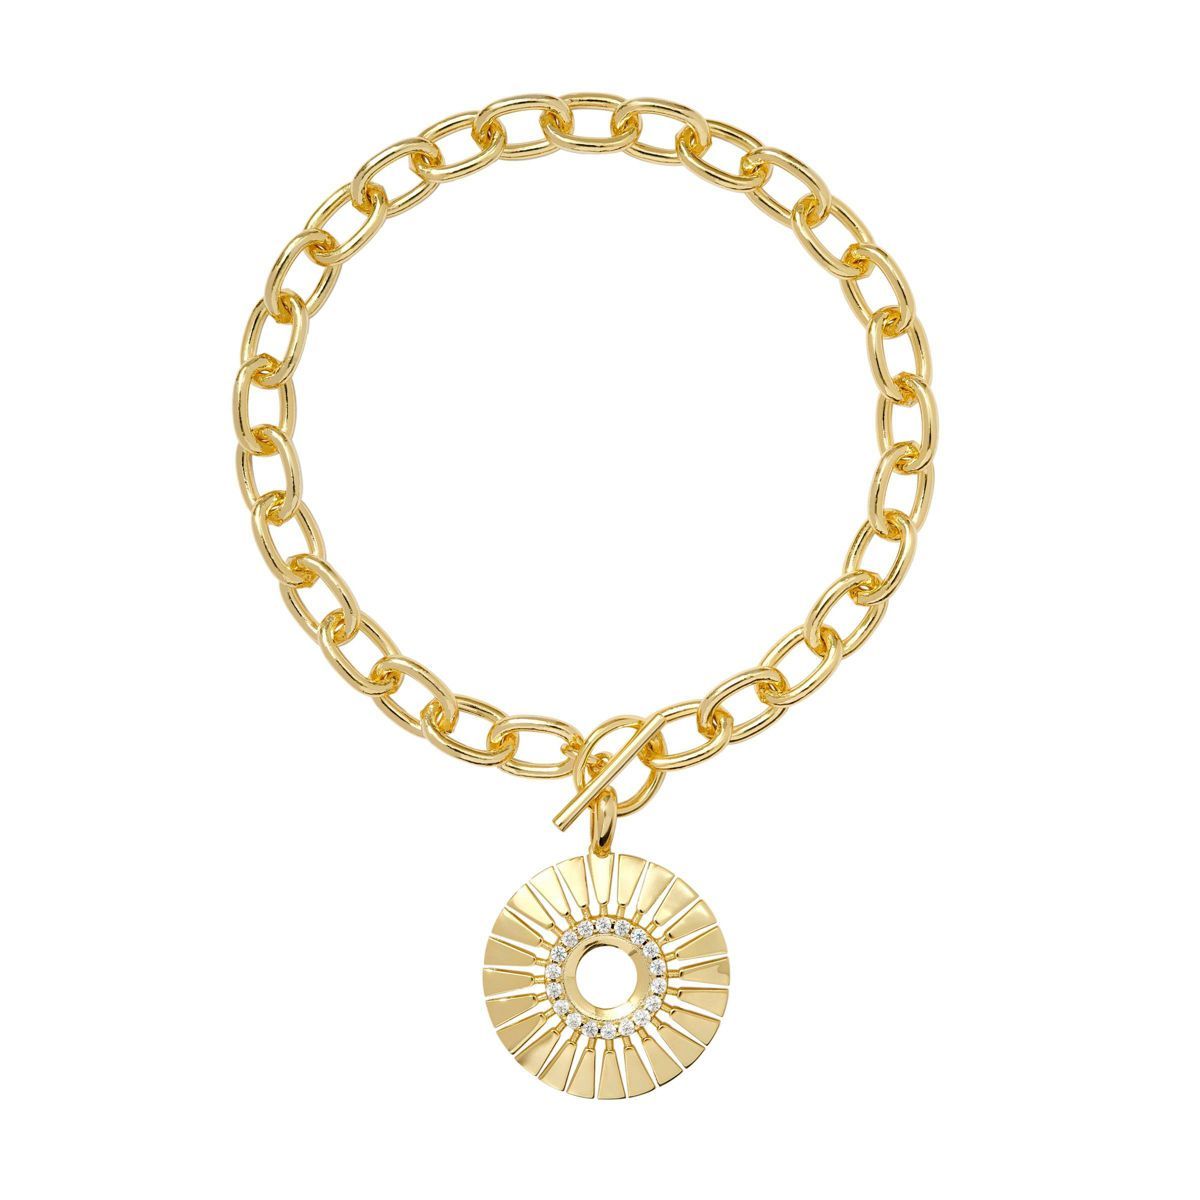 Kendra Scott Hattie Chain Bracelet - Gold | Target